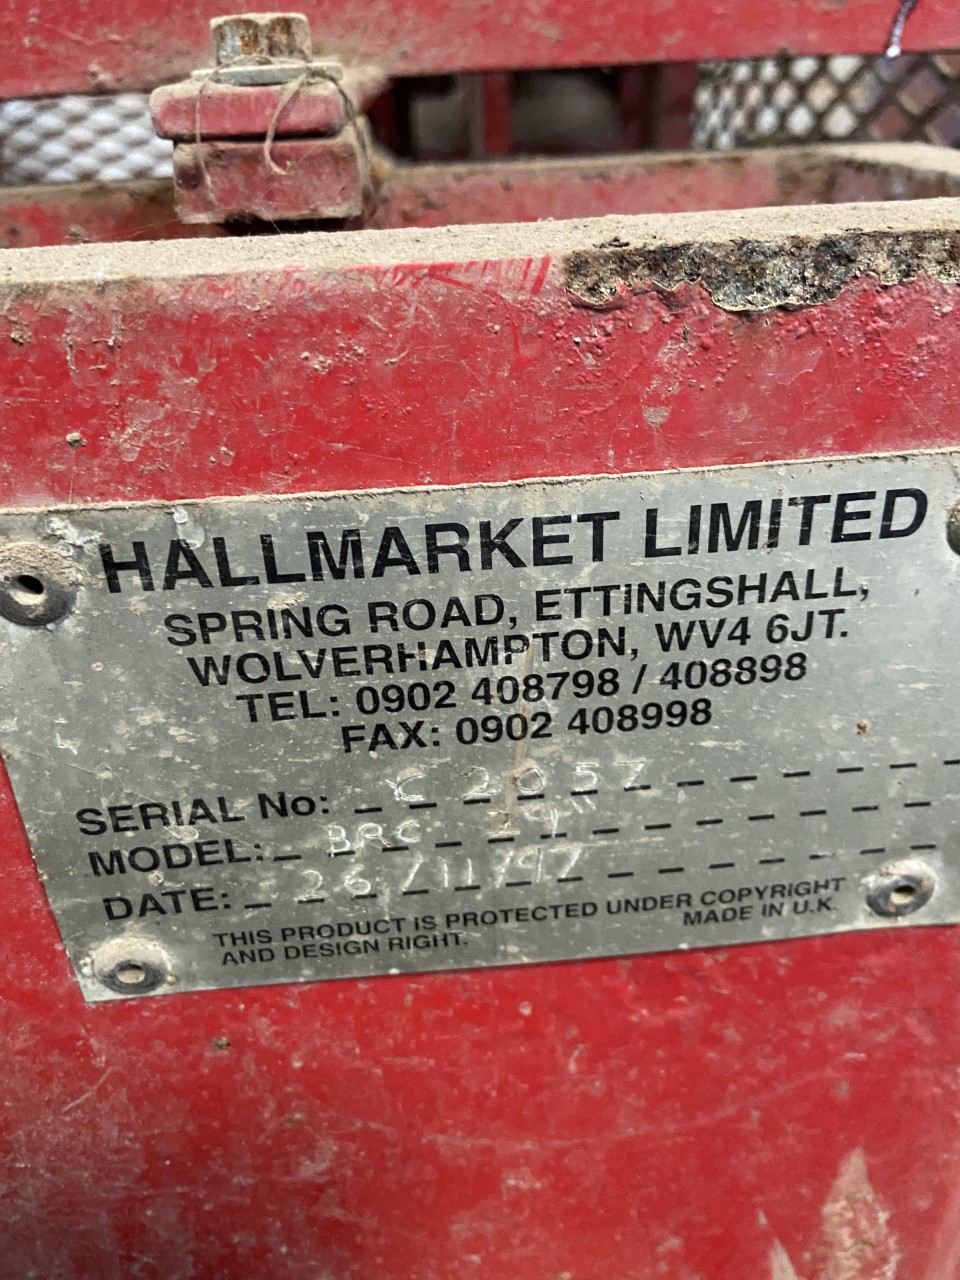 Hallmarket Big Roll Cutter for sale